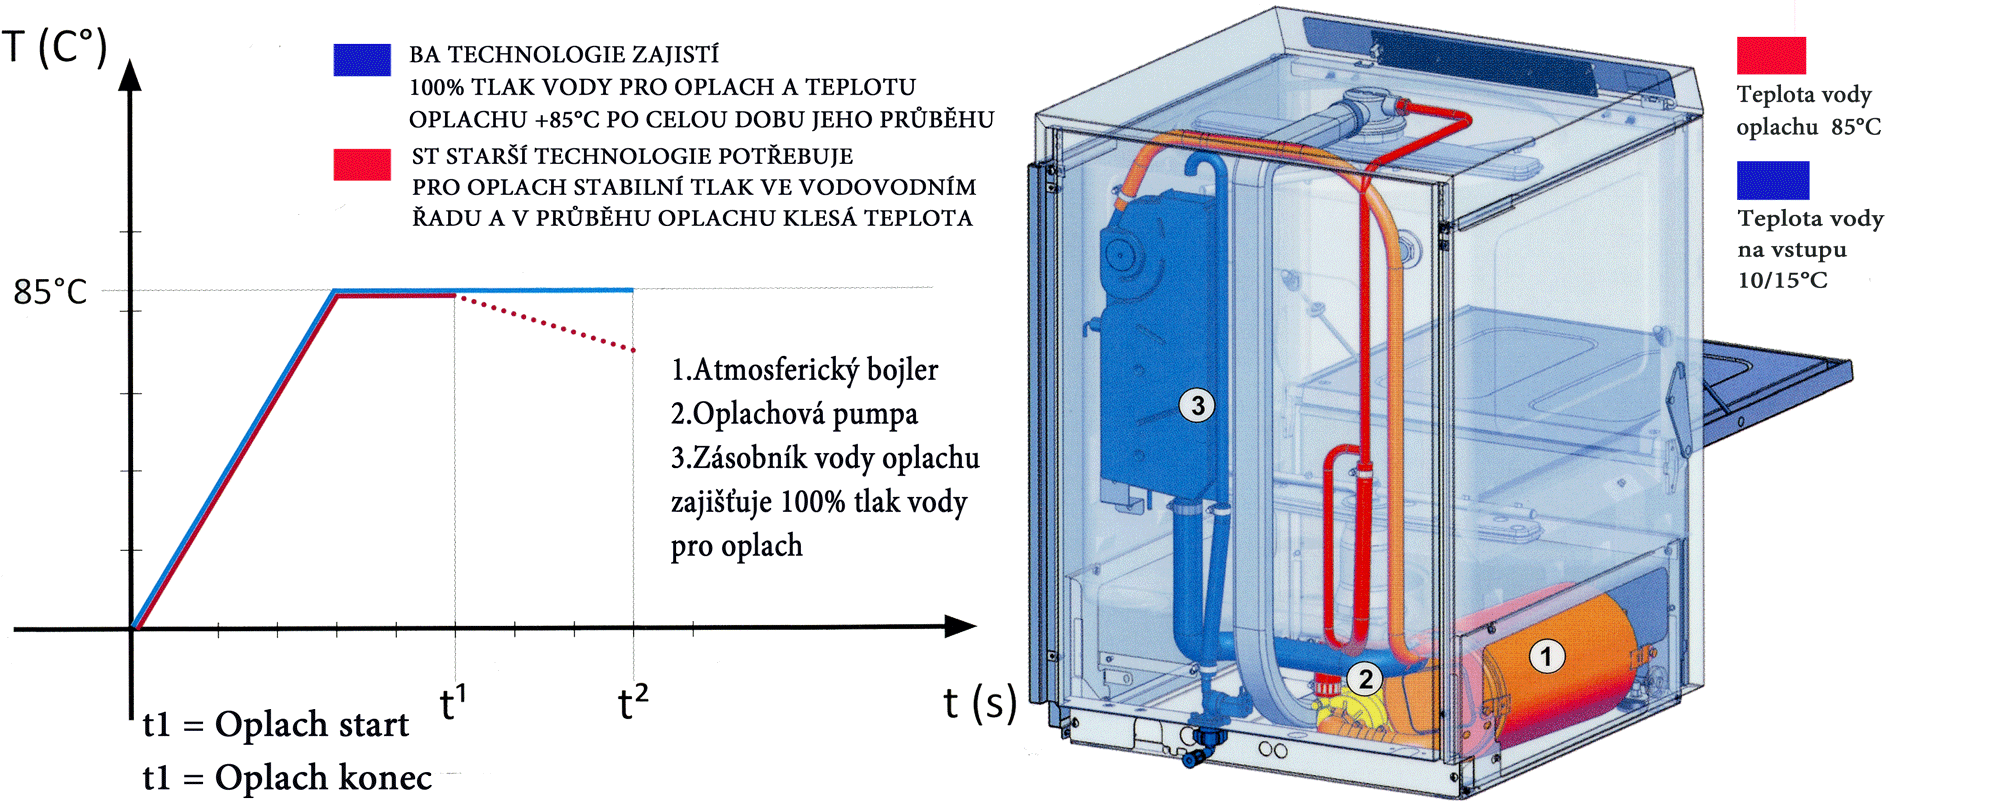 BA systém stability teploty a tlaku vody při oplachu 